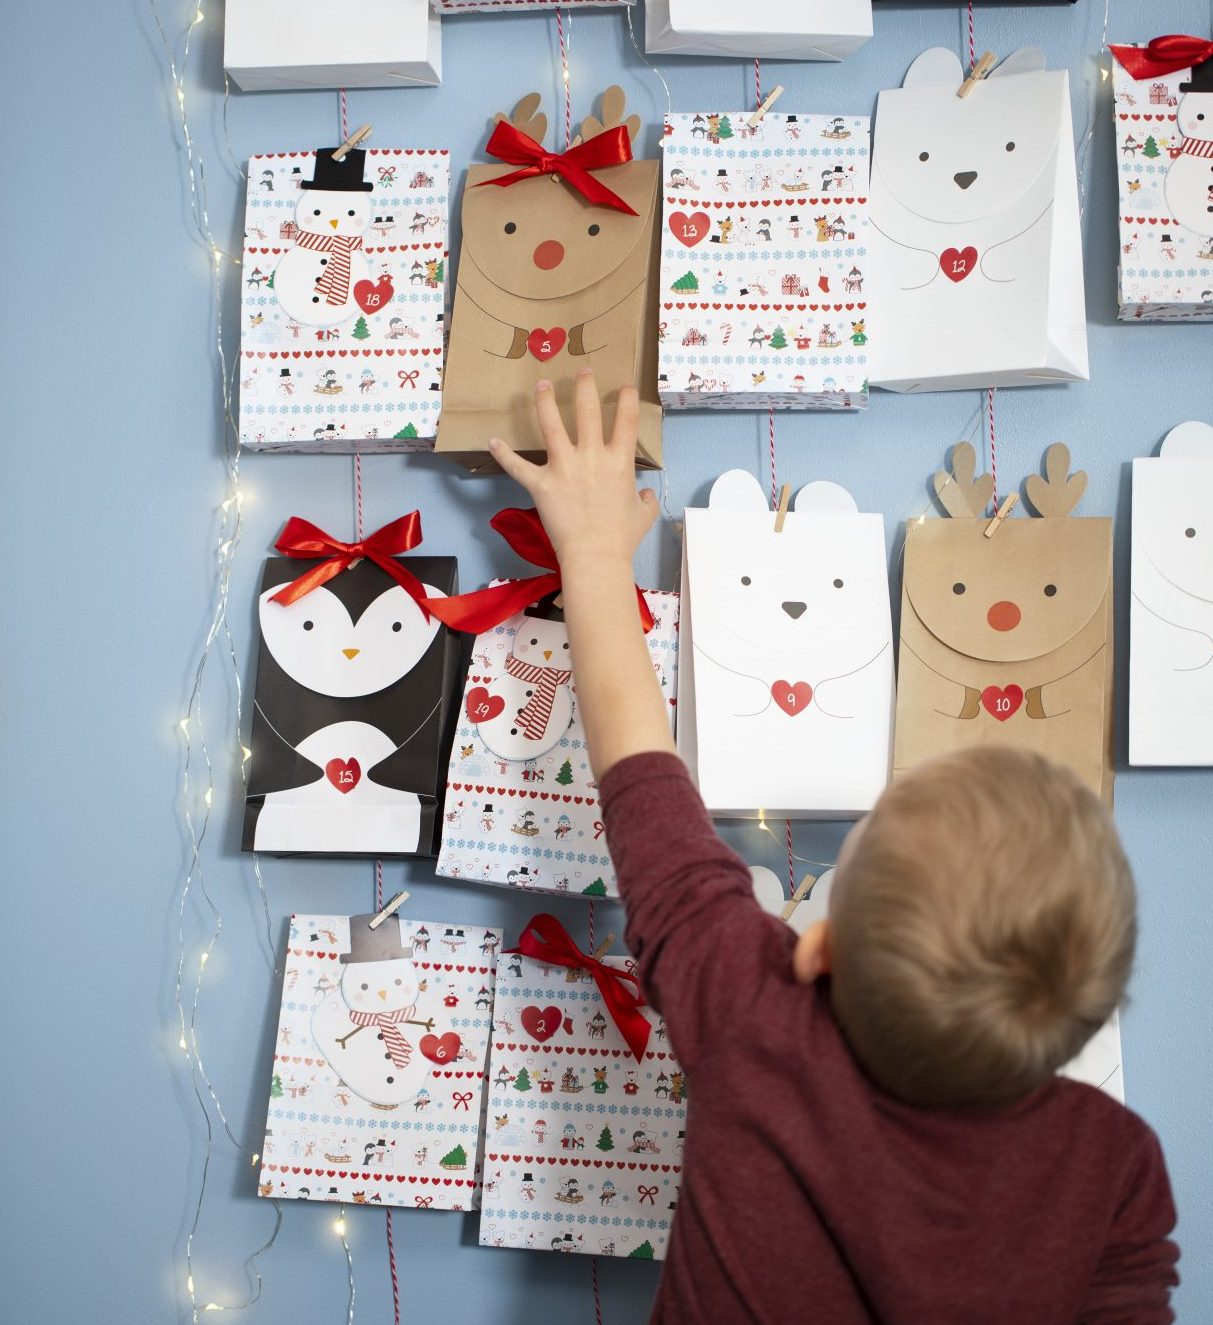 Pakkekalender til jul - kreativ indpakning af kalendergaver